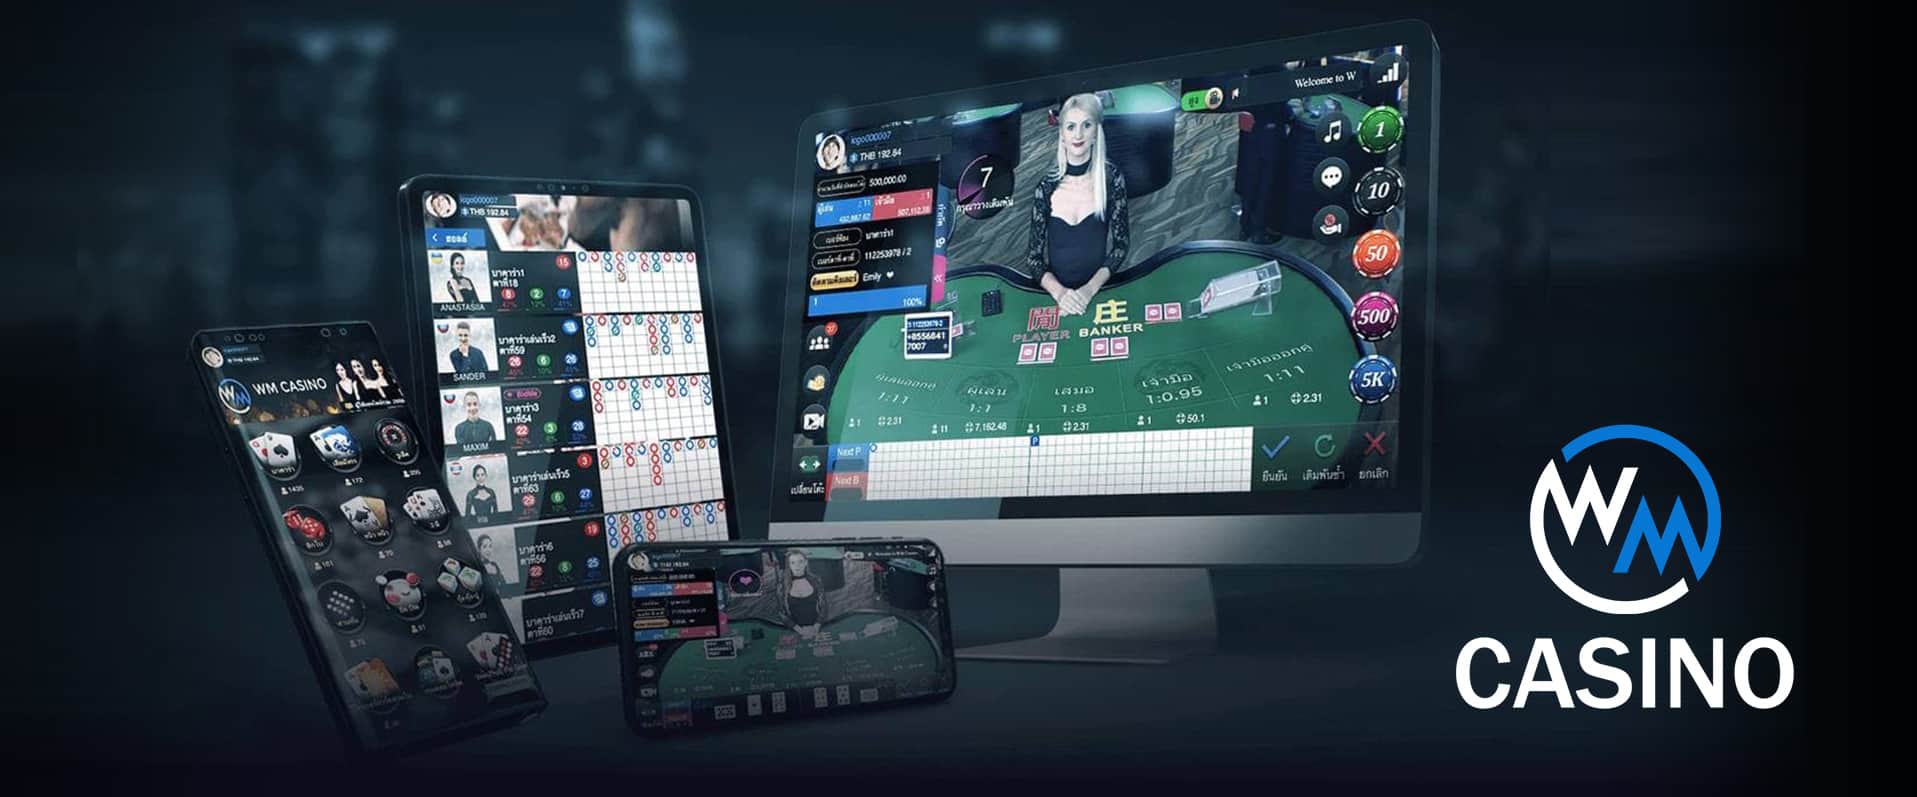 Casino WM CASINO là sảnh chơi dẫn đầu lượng truy cập tại nhà cái Xoso66